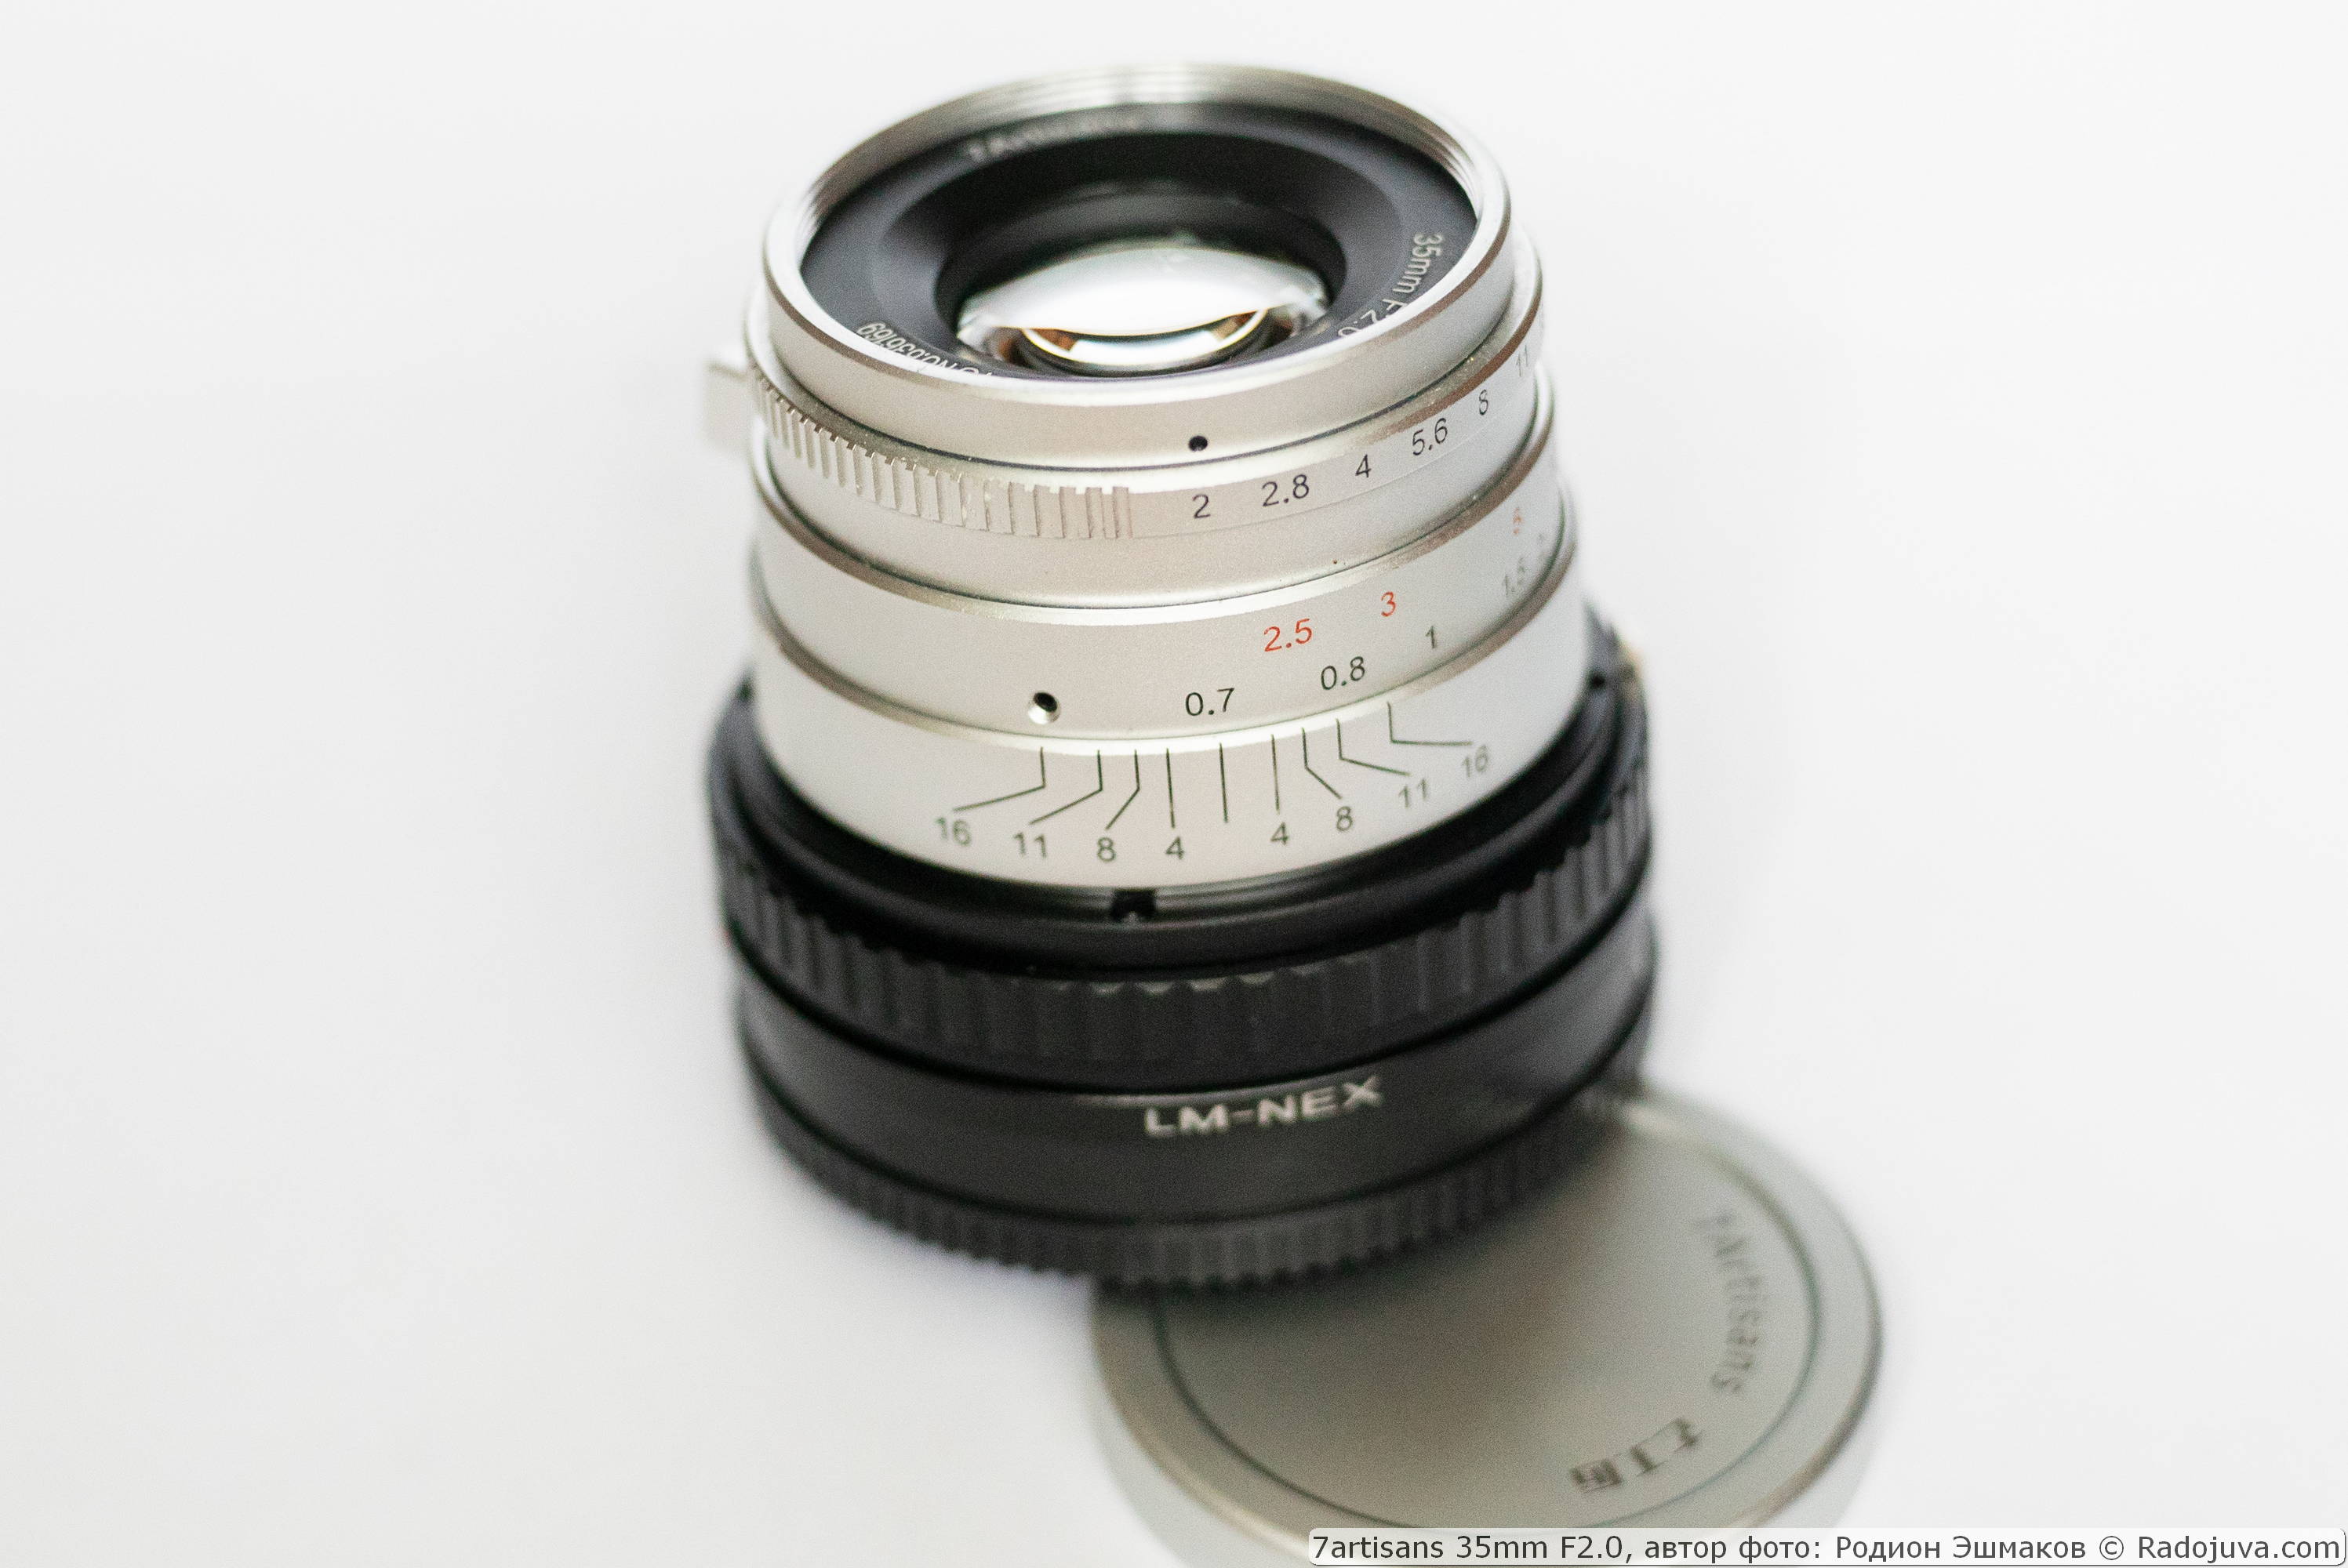 7artisans 35/2 lens met Leica M-NEX helicoid-adapter bij scherpstelling op MDF-lens en adapter.